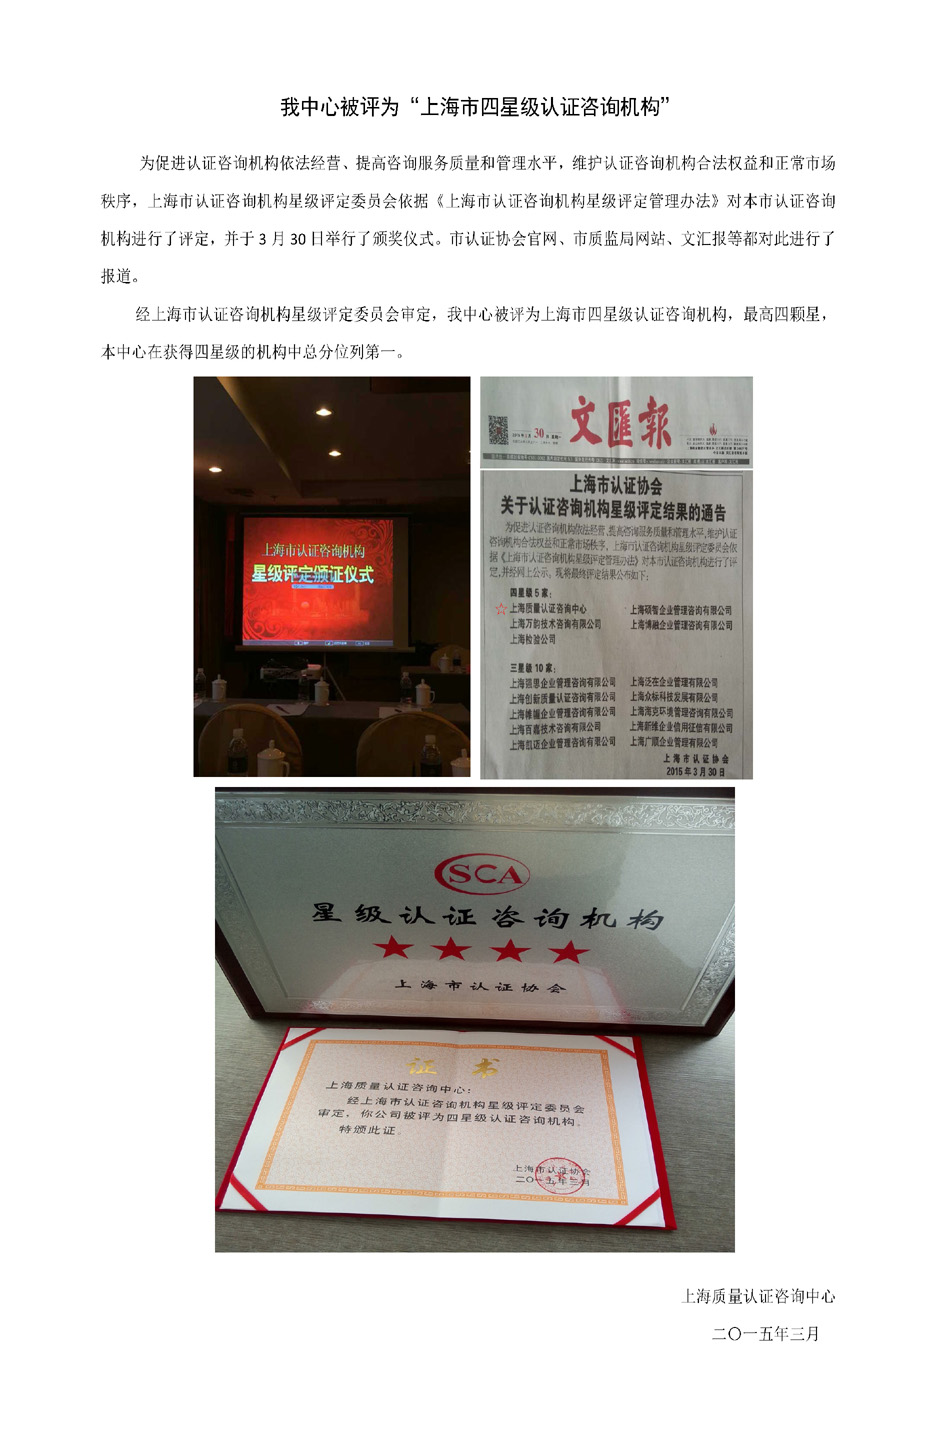 我中心被评为“上海市四星级认证咨询机构”.jpg